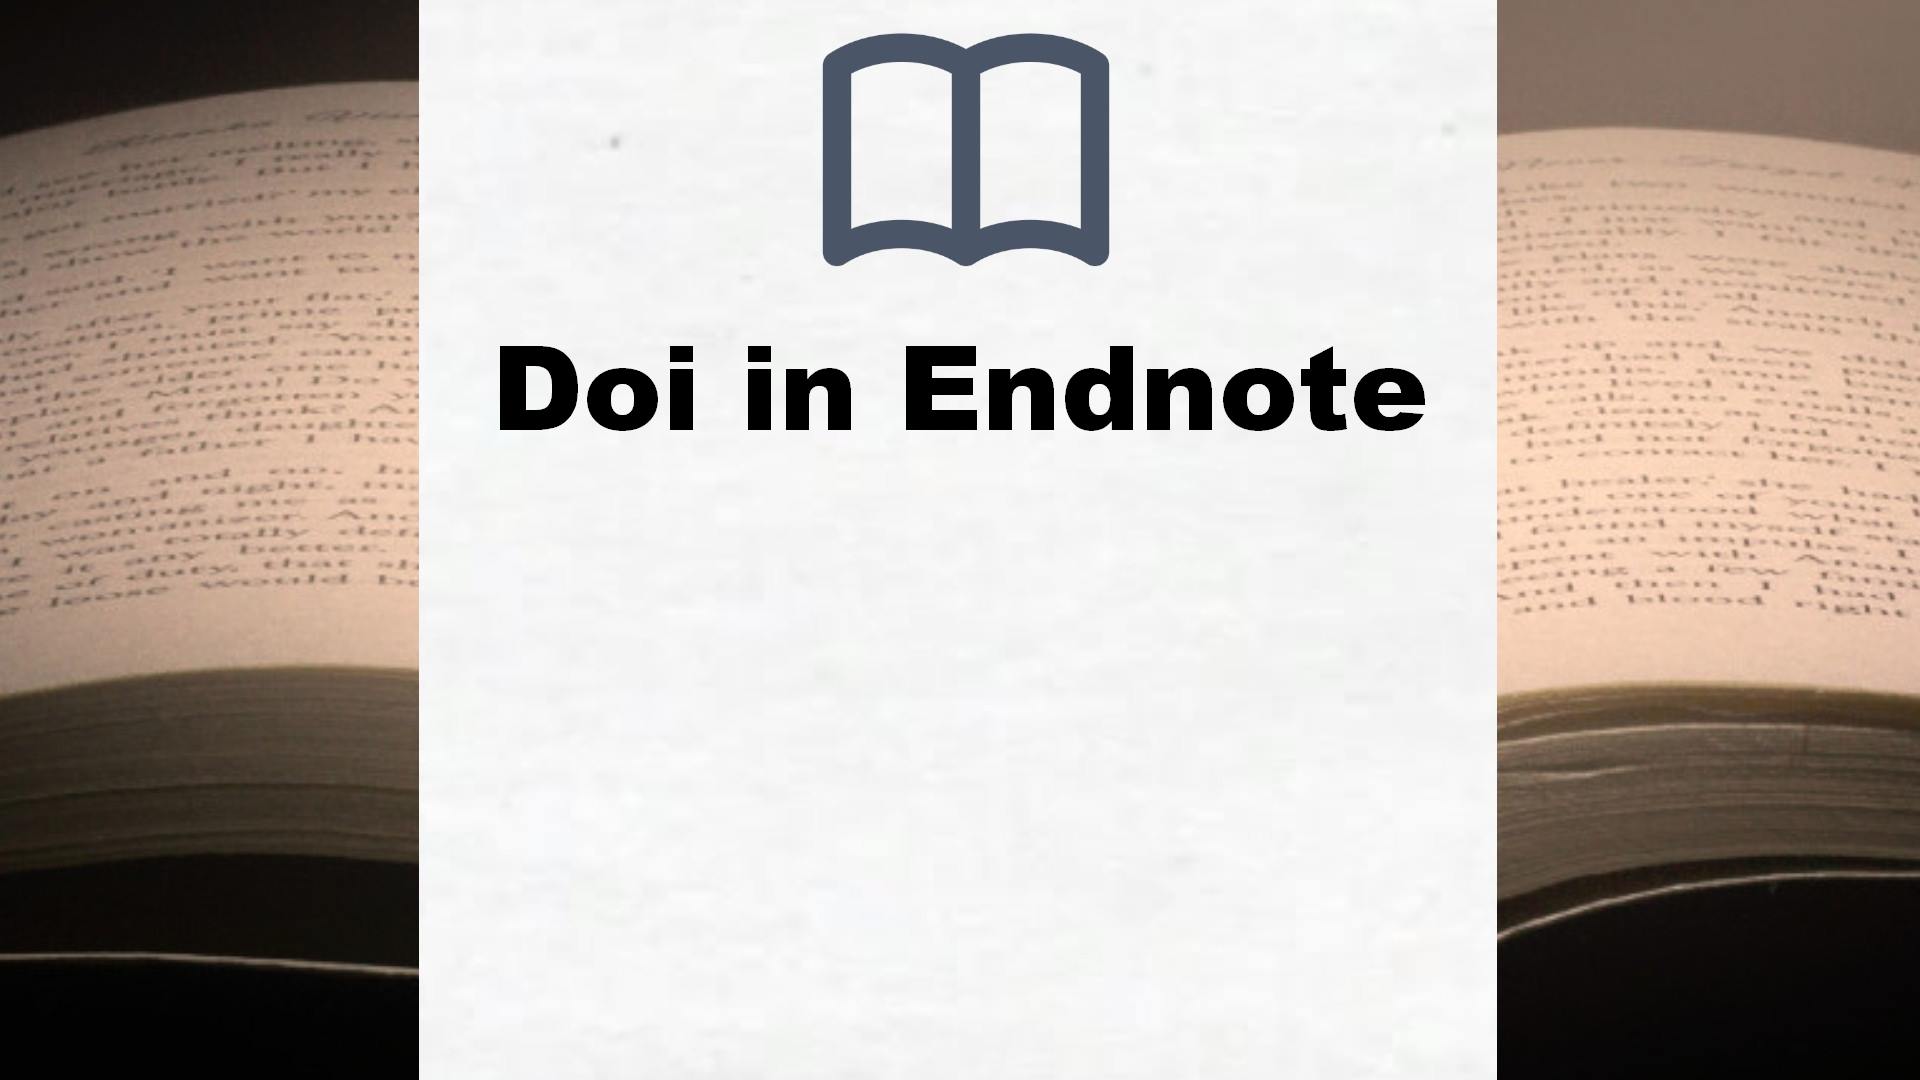 Bücher über Doi in Endnote